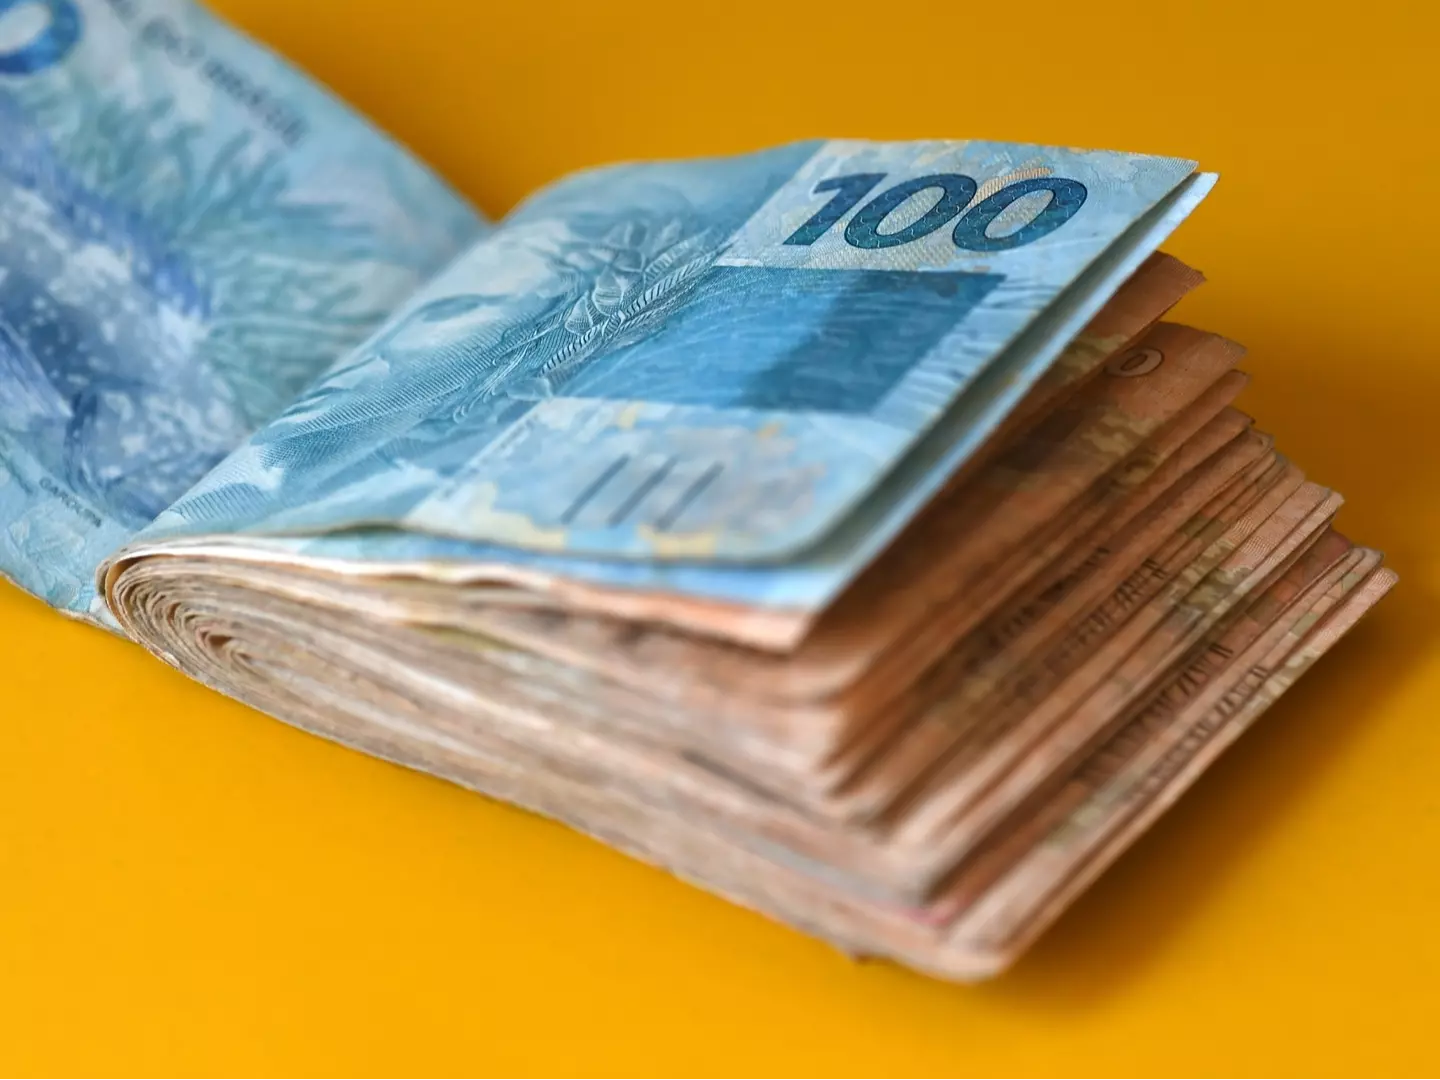 Publicada MP para elevar salário mínimo a R$ 1.302,00 a partir de 1º de janeiro